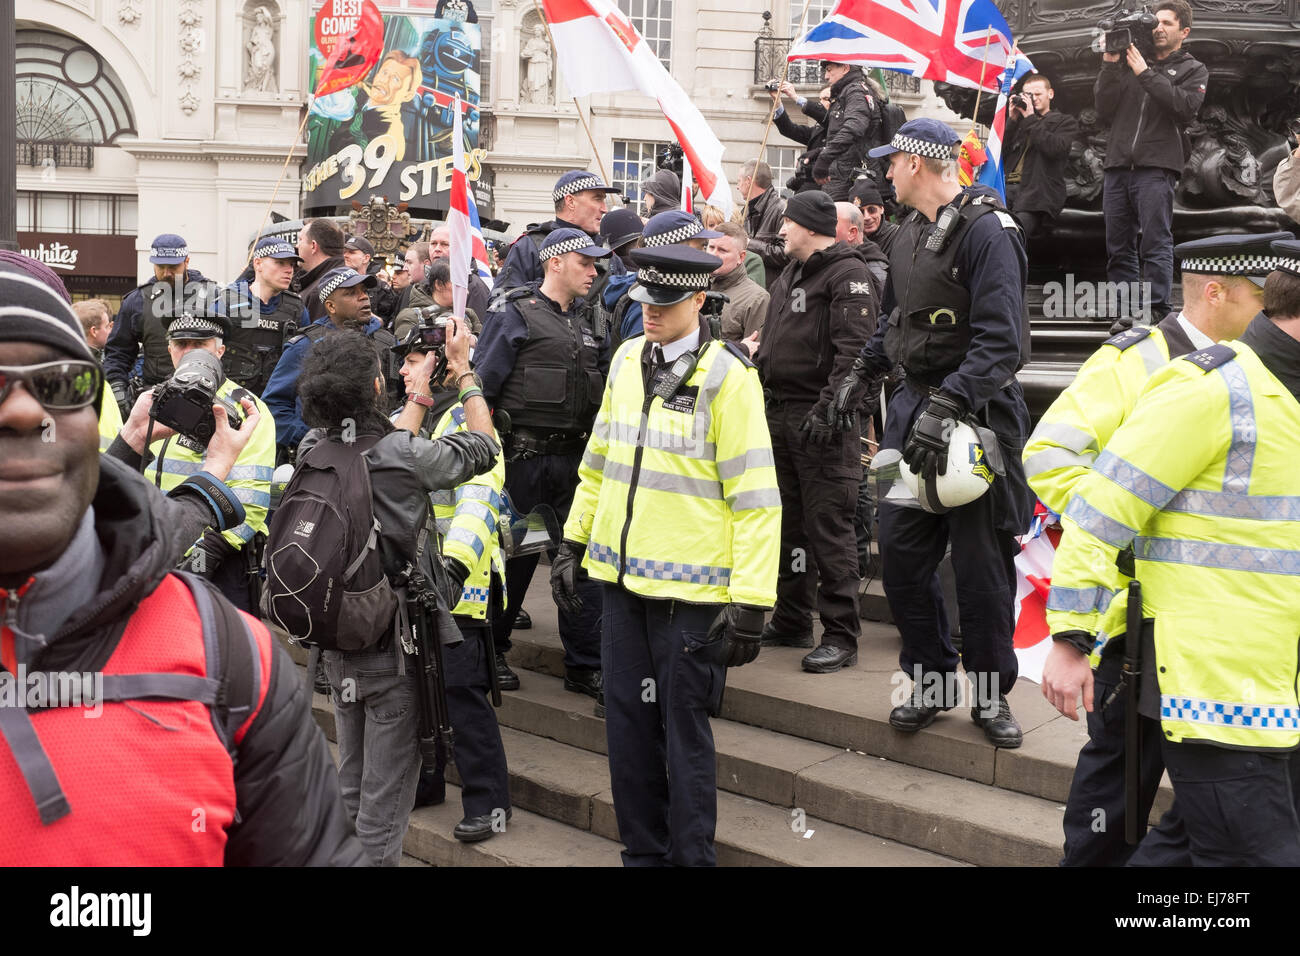 Une démonstration de lutte contre le racisme à Londres, 21 mars 2015. Paul Golding d'Angleterre Premier représenté sur les étapes de l'Éros à Piccadilly Circus Banque D'Images